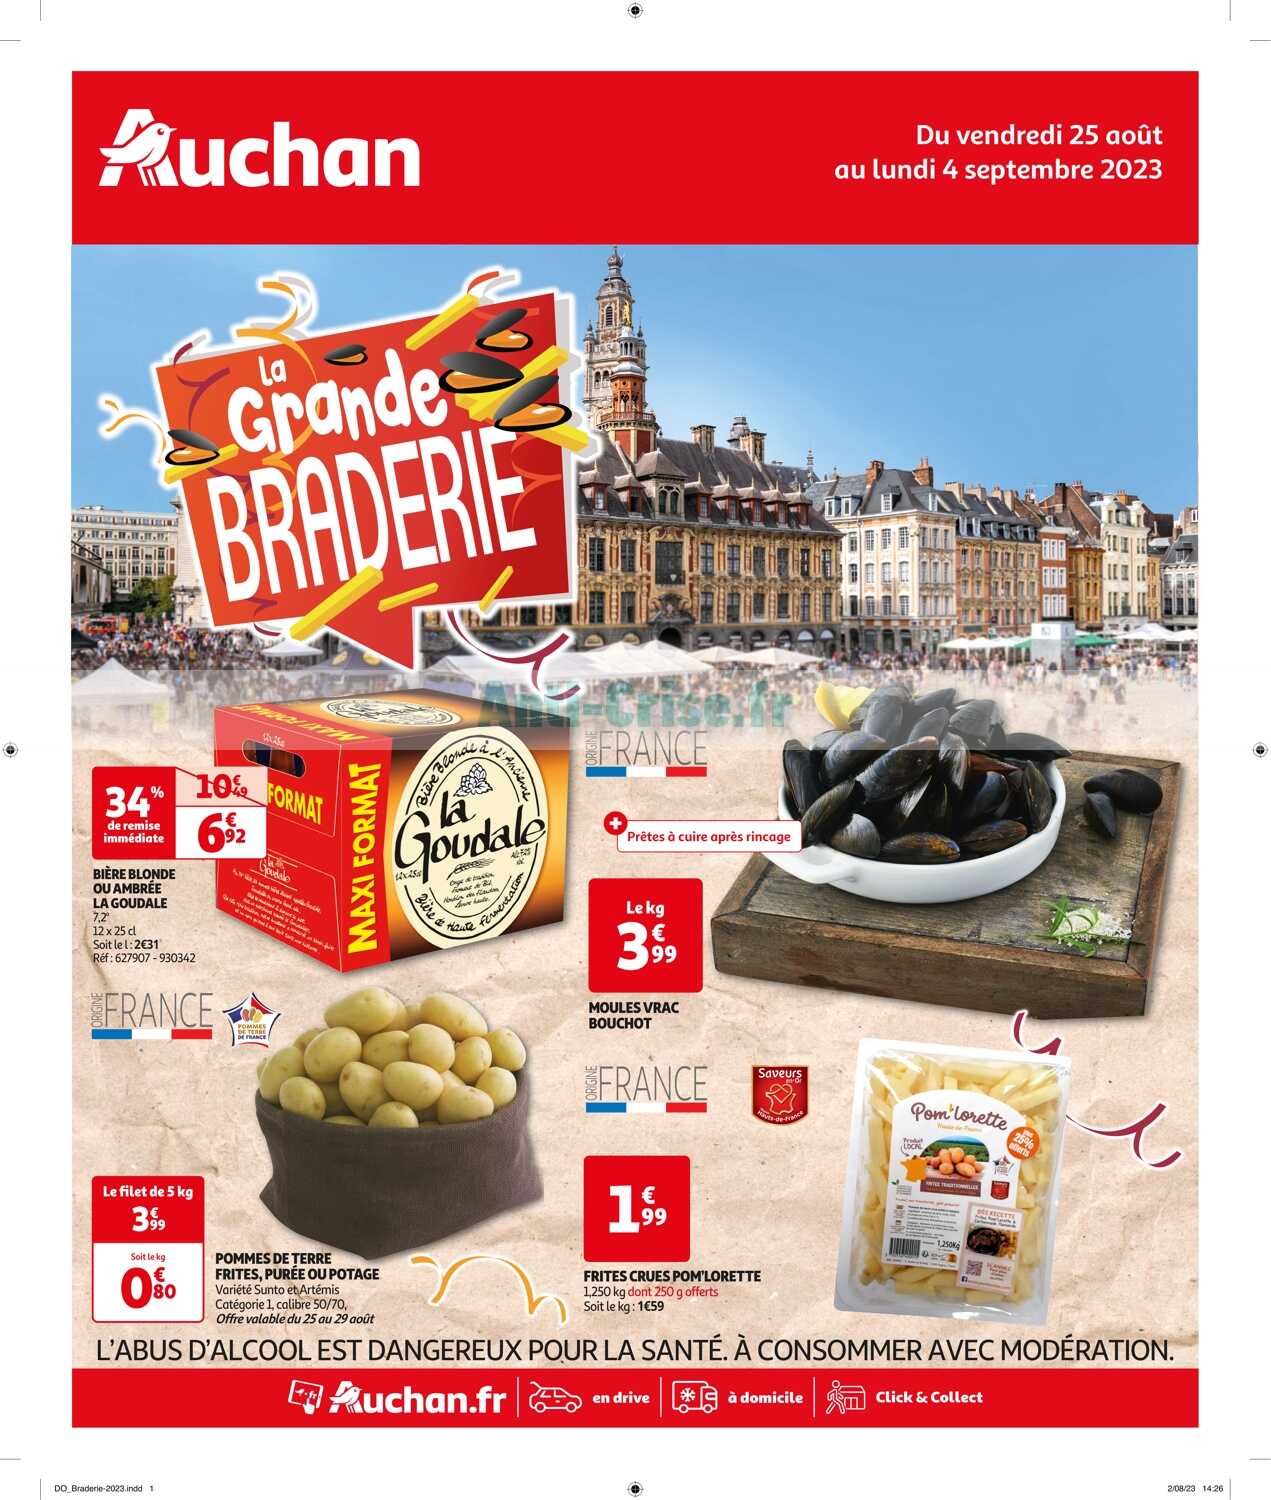 Promo Badaboule chez Auchan